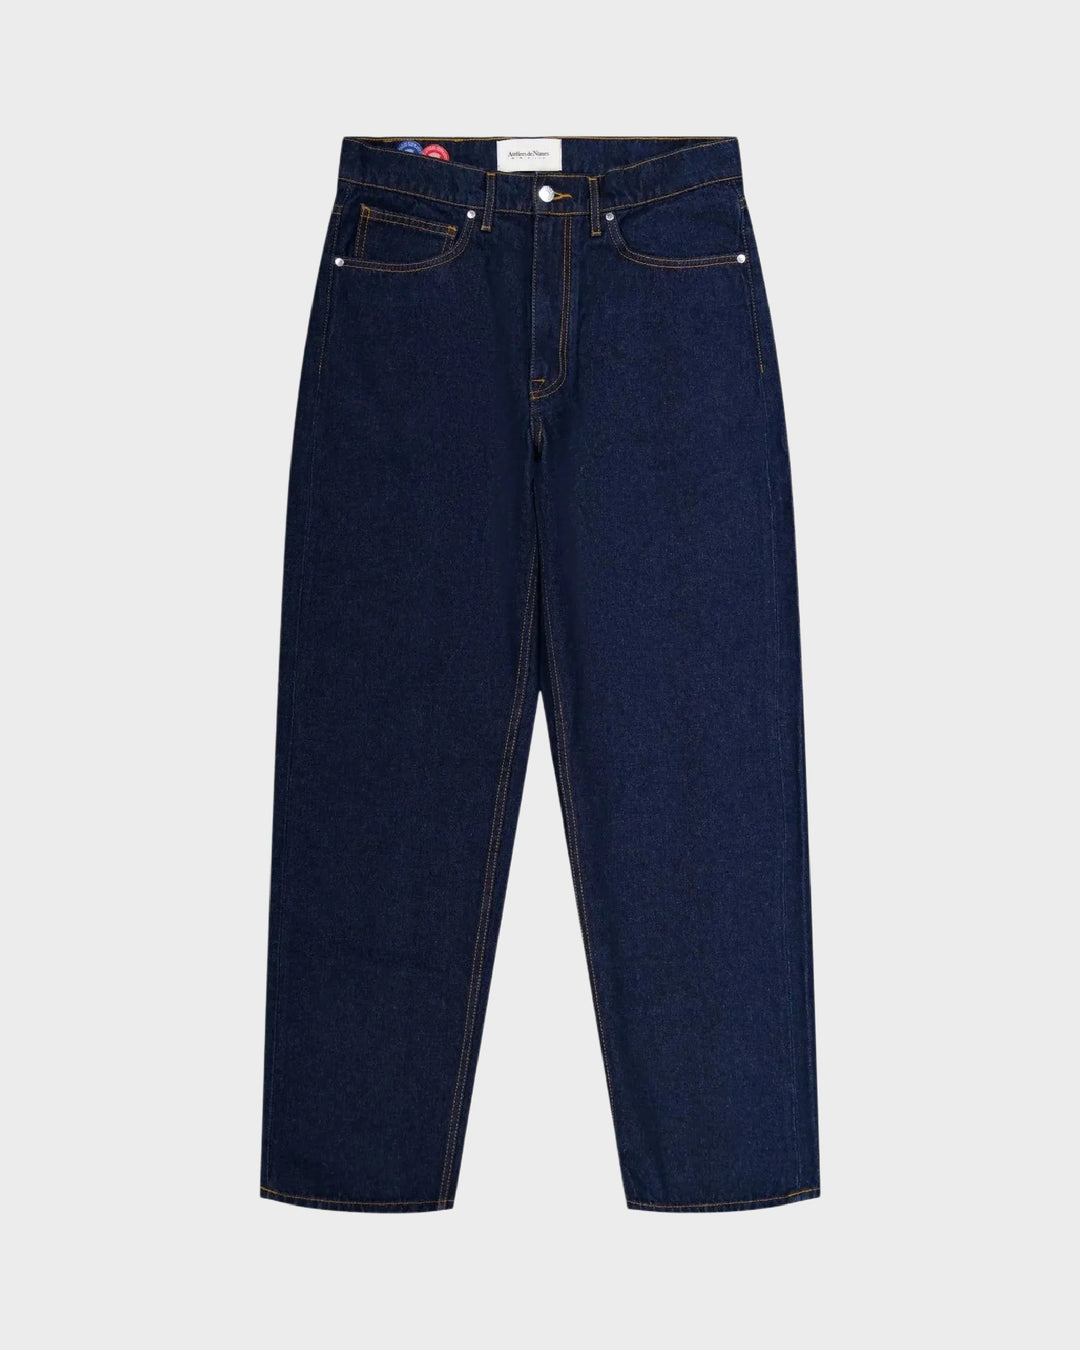 Jeans DN.10 ample en coton bio